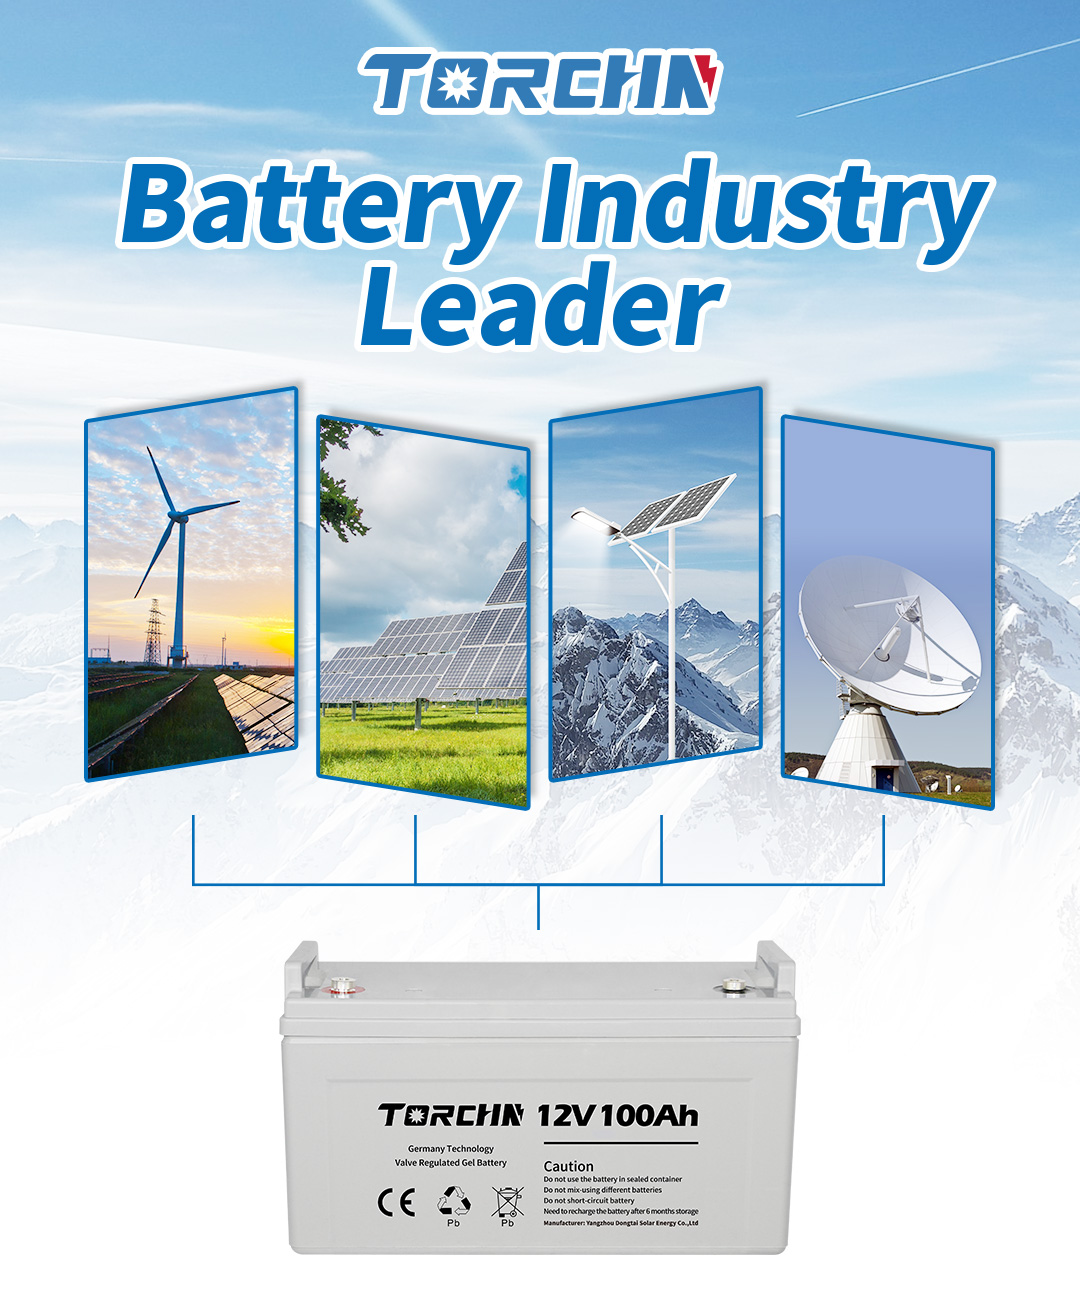 Prodam gel baterijo TORCHN 12v 100ah po tovarniški ceni